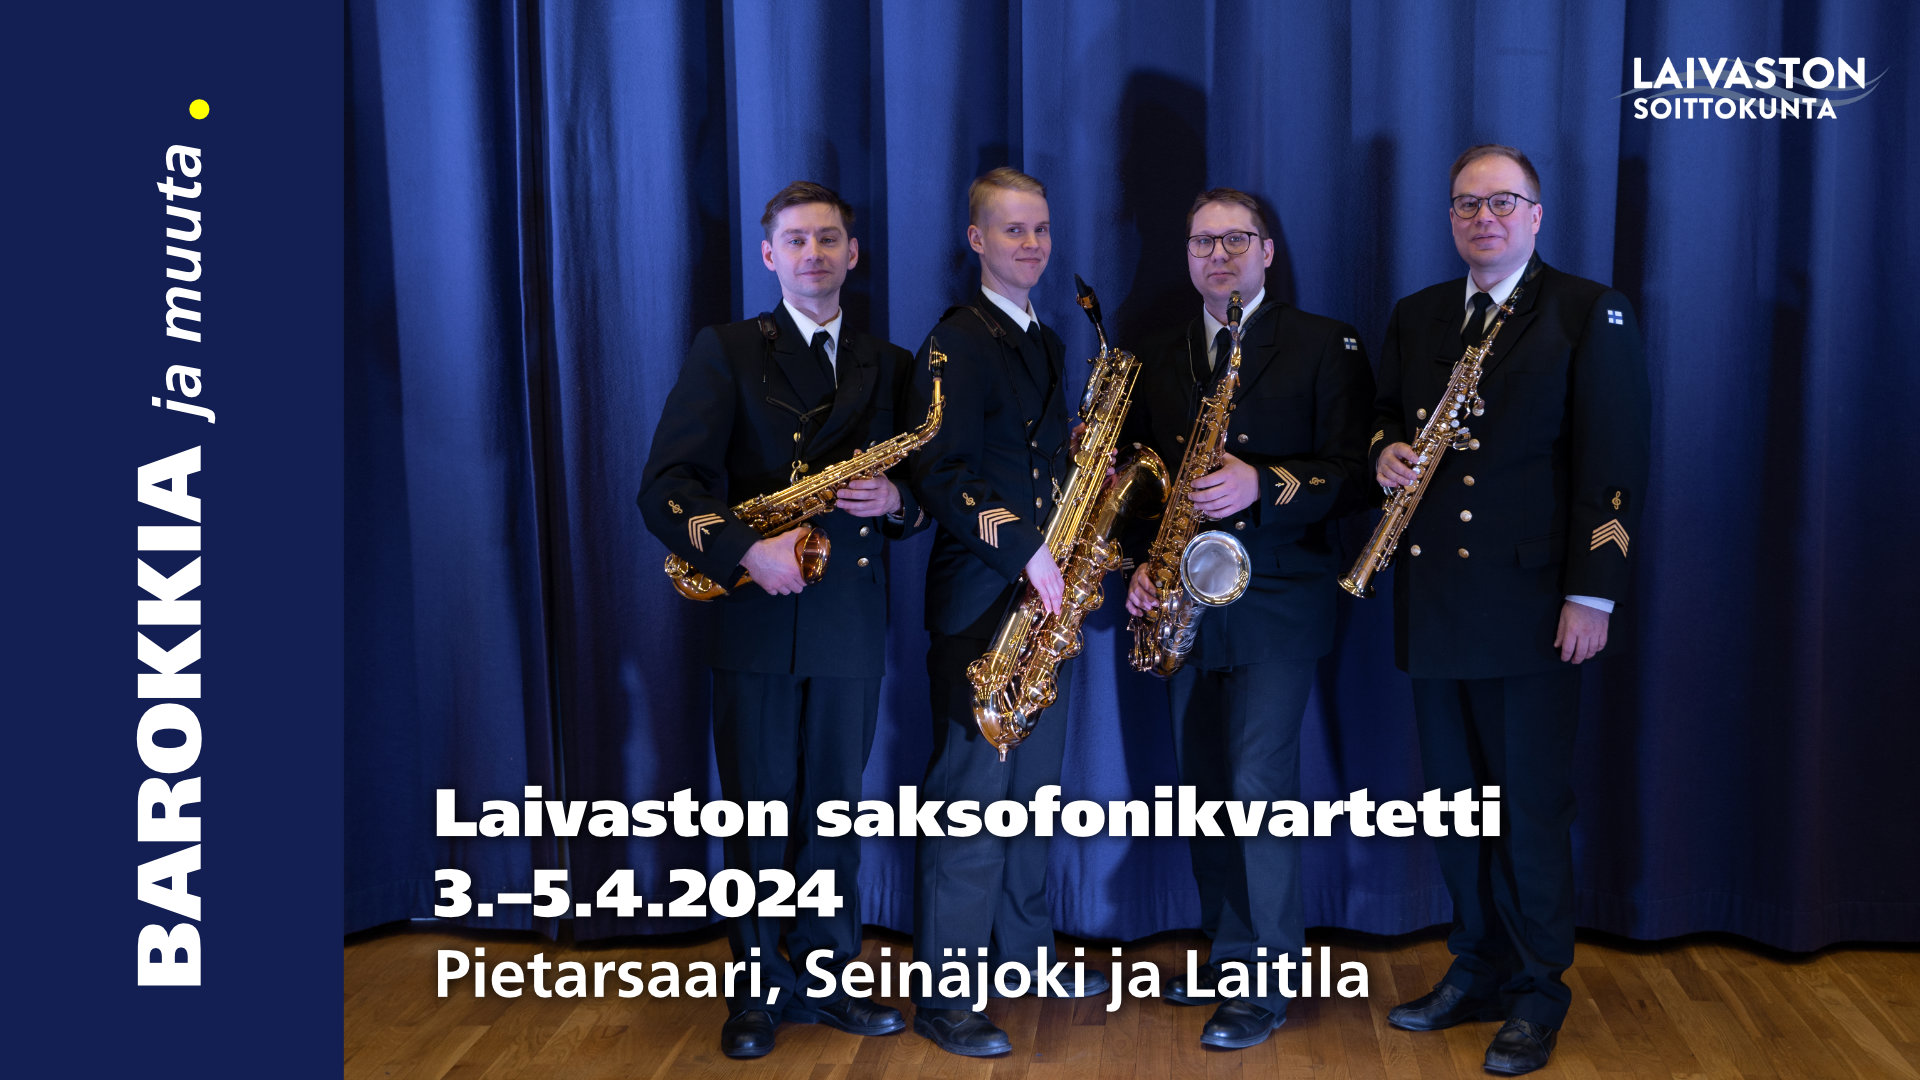 Laivaston soittokunnan saksofonikvartetti konsertoi Pietarsaaren kirkossa ke 3.4. juliste